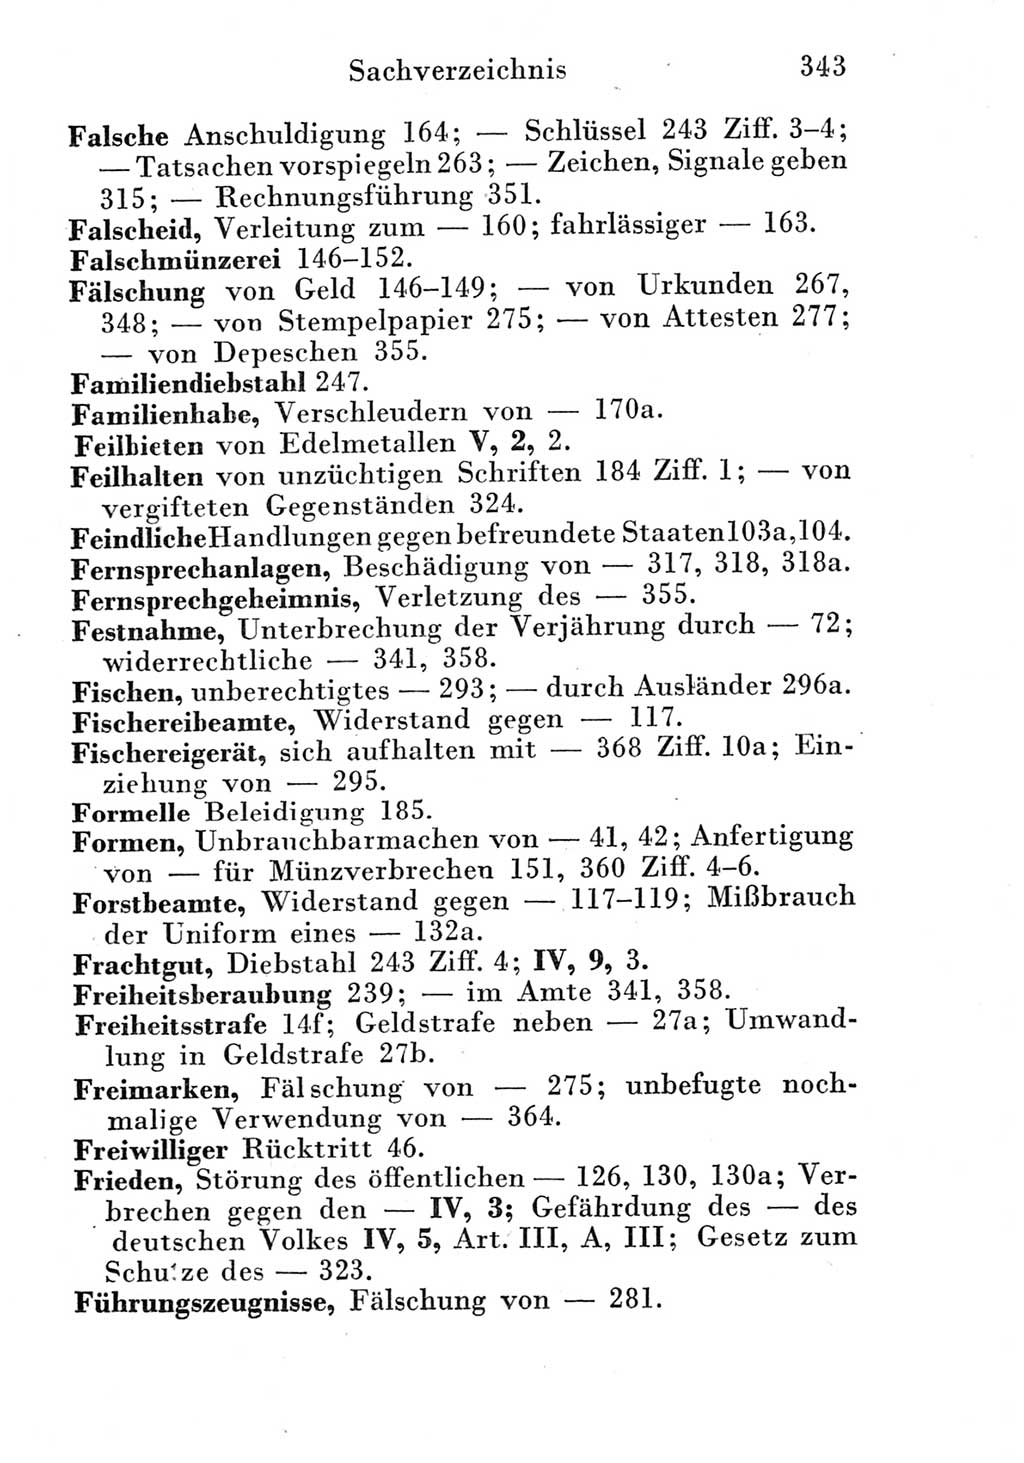 Strafgesetzbuch (StGB) und andere Strafgesetze [Deutsche Demokratische Republik (DDR)] 1951, Seite 343 (StGB Strafges. DDR 1951, S. 343)